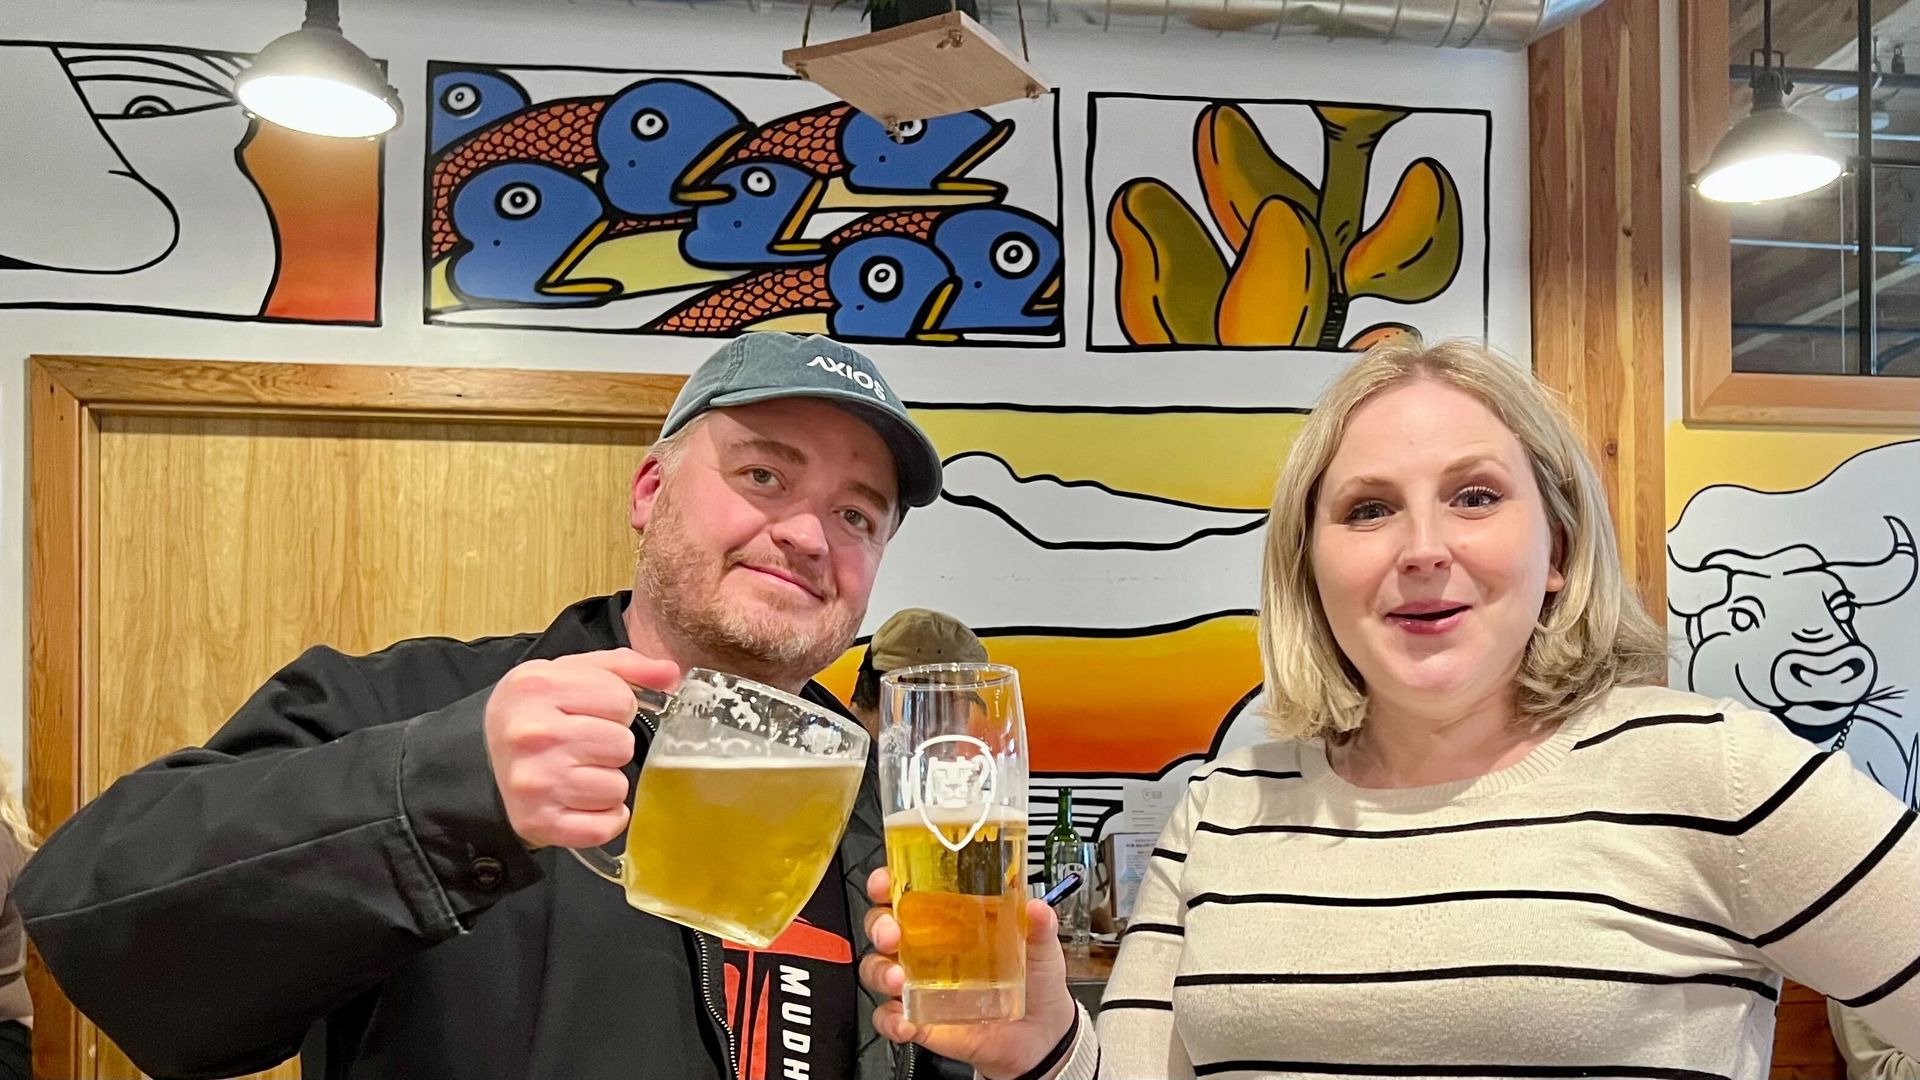 Lewis and Melissa cheers beers